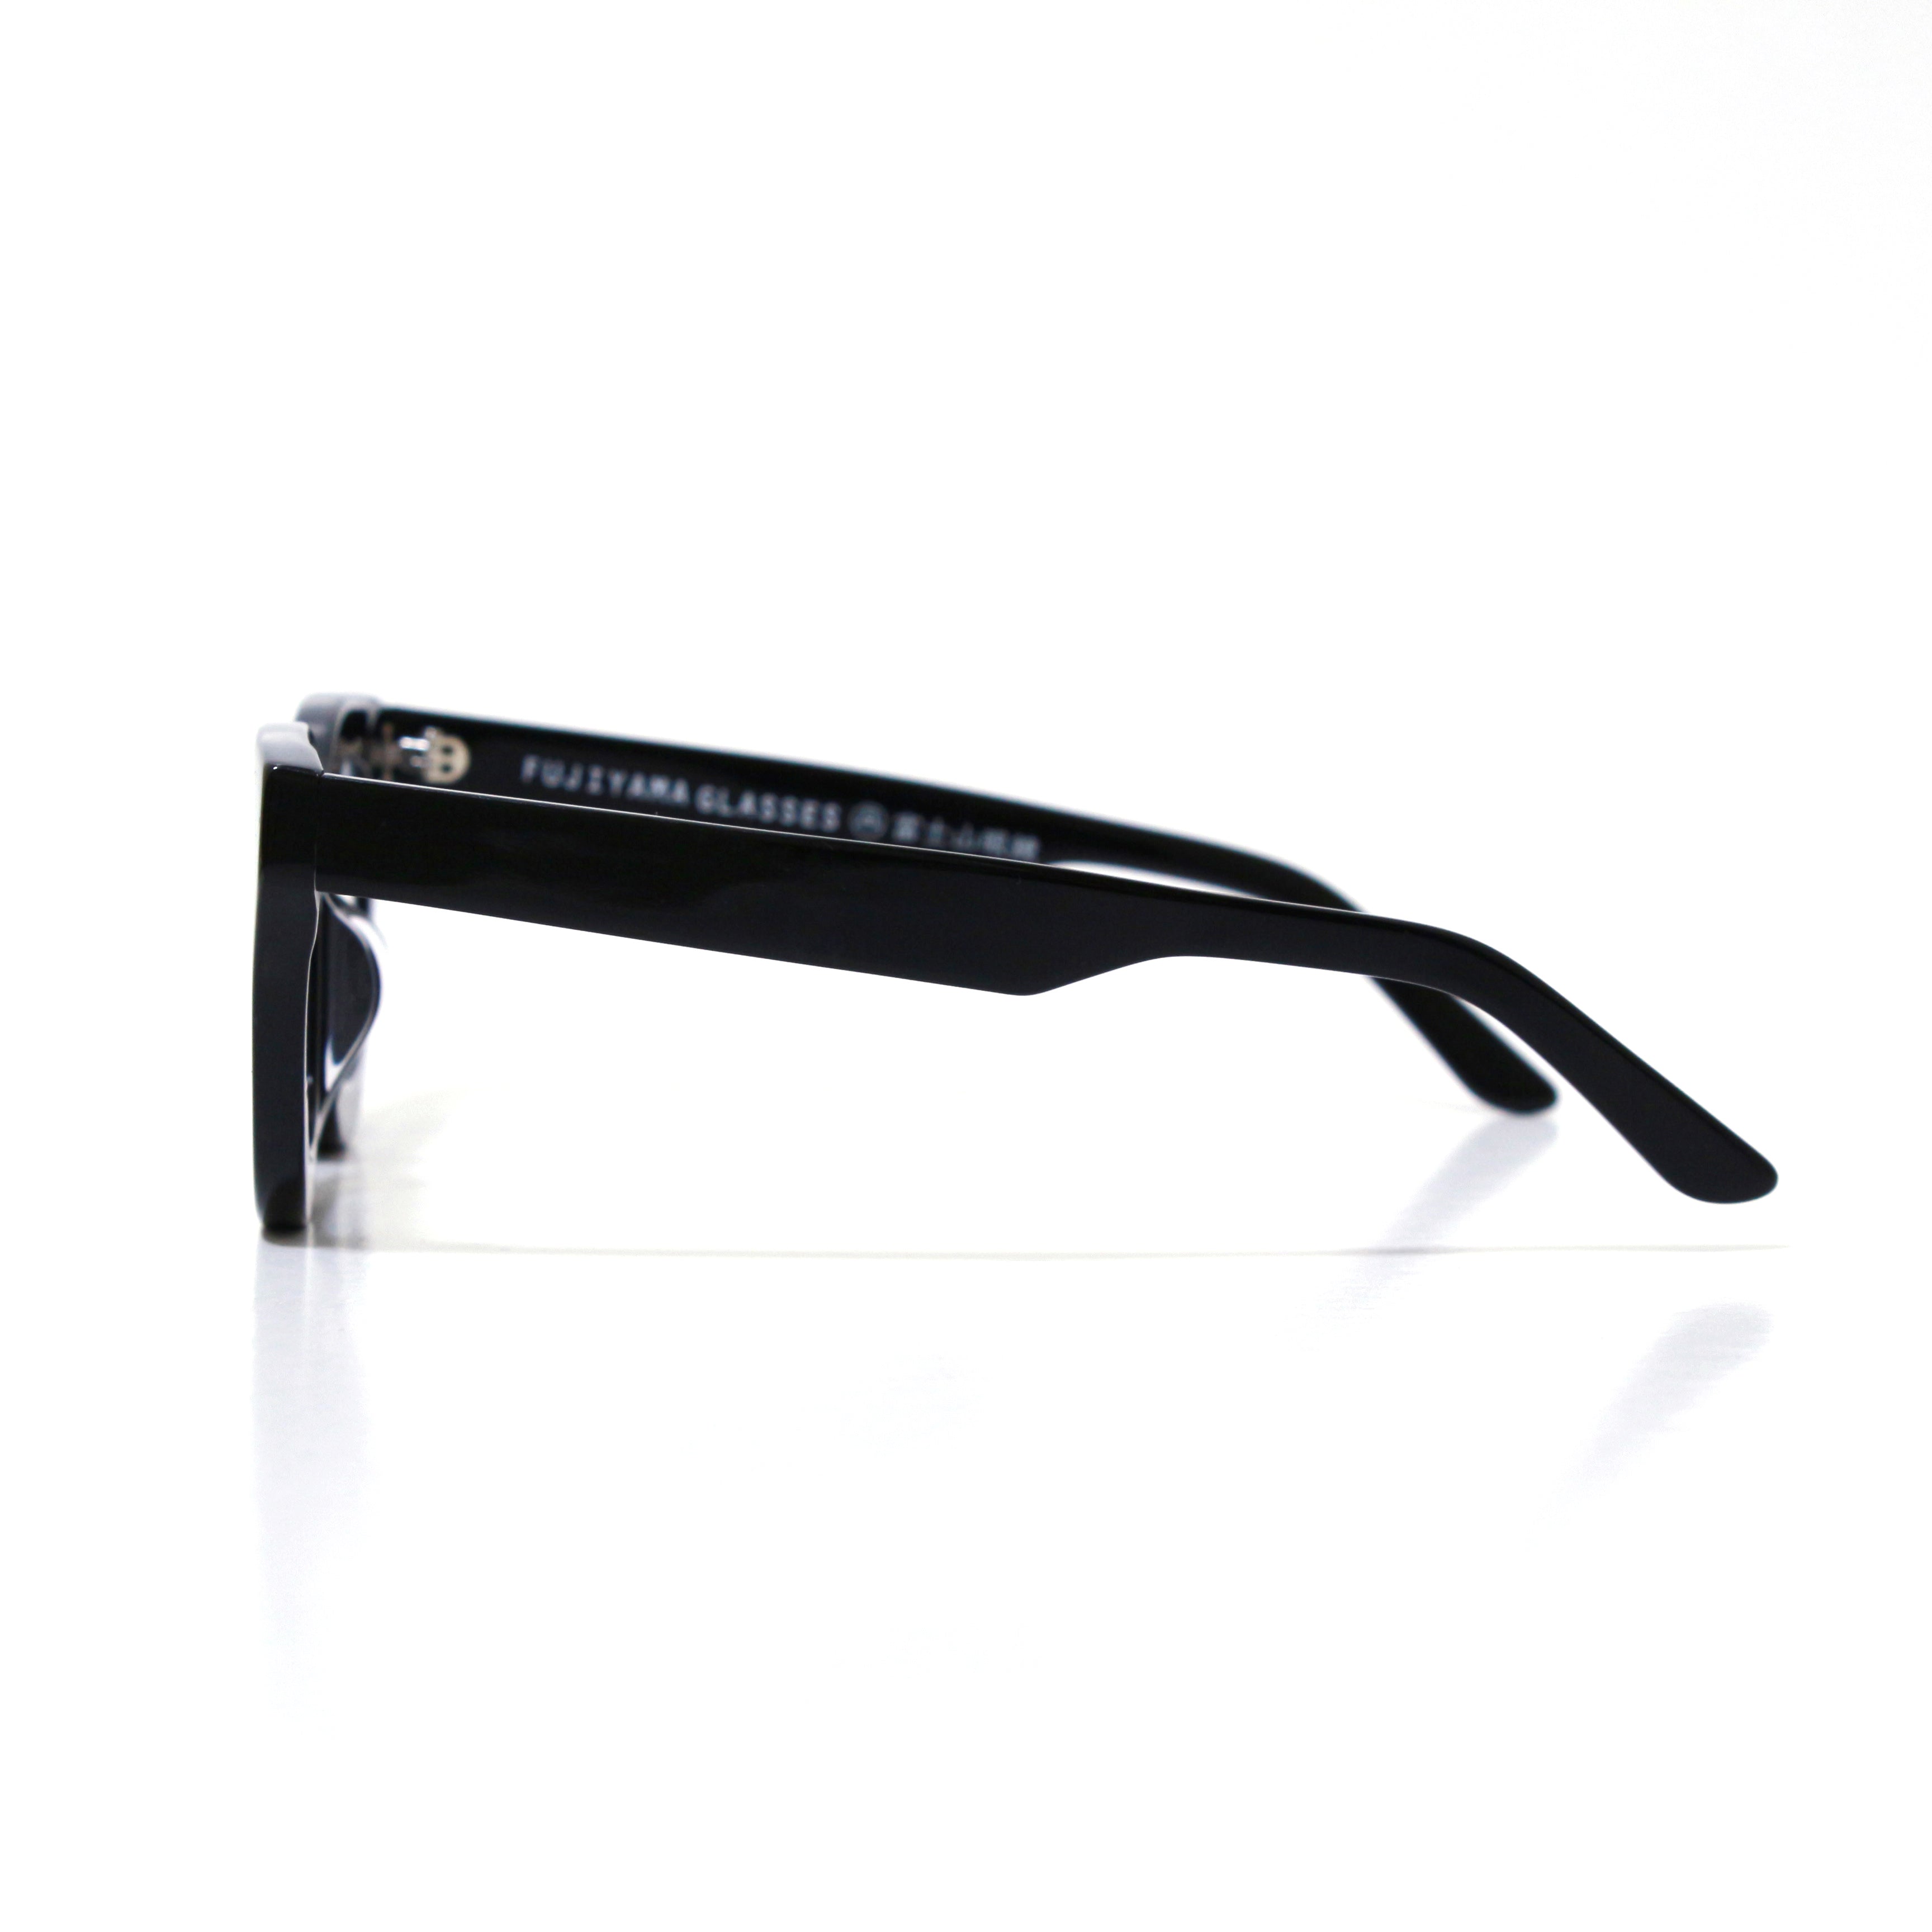 人気ショップ富士山眼鏡 オリジナル ゴース GHOSE 太セル 黒縁 スリムシェイプ BL サングラス/メガネ